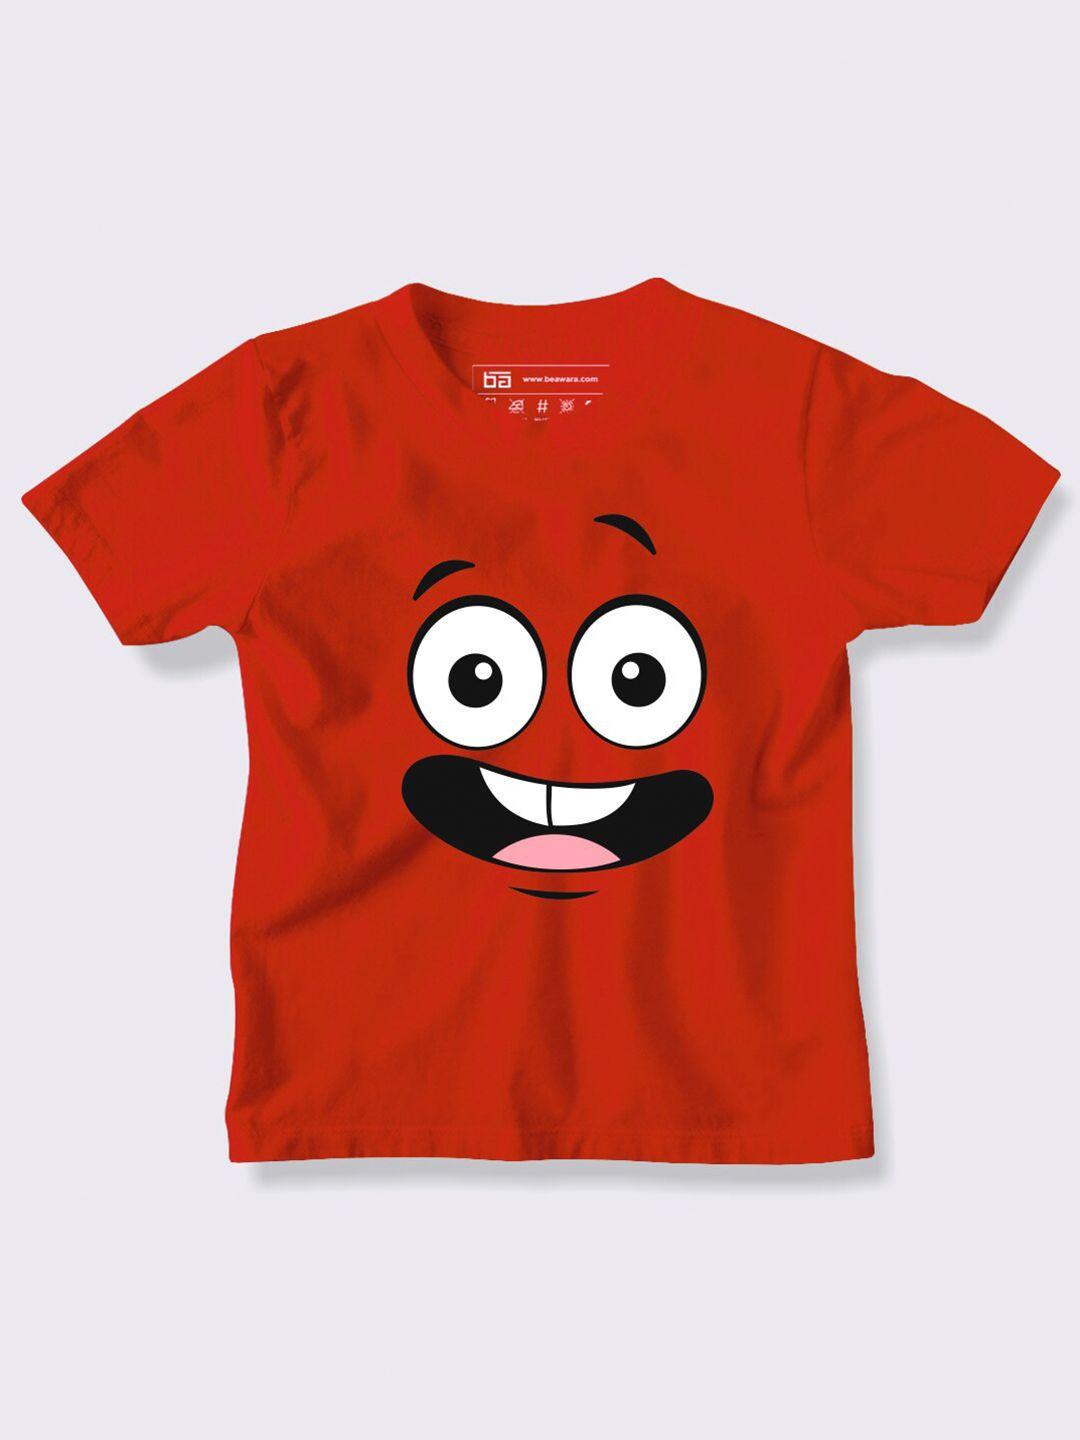 be awara kids red & lemon iced tea printed t-shirt